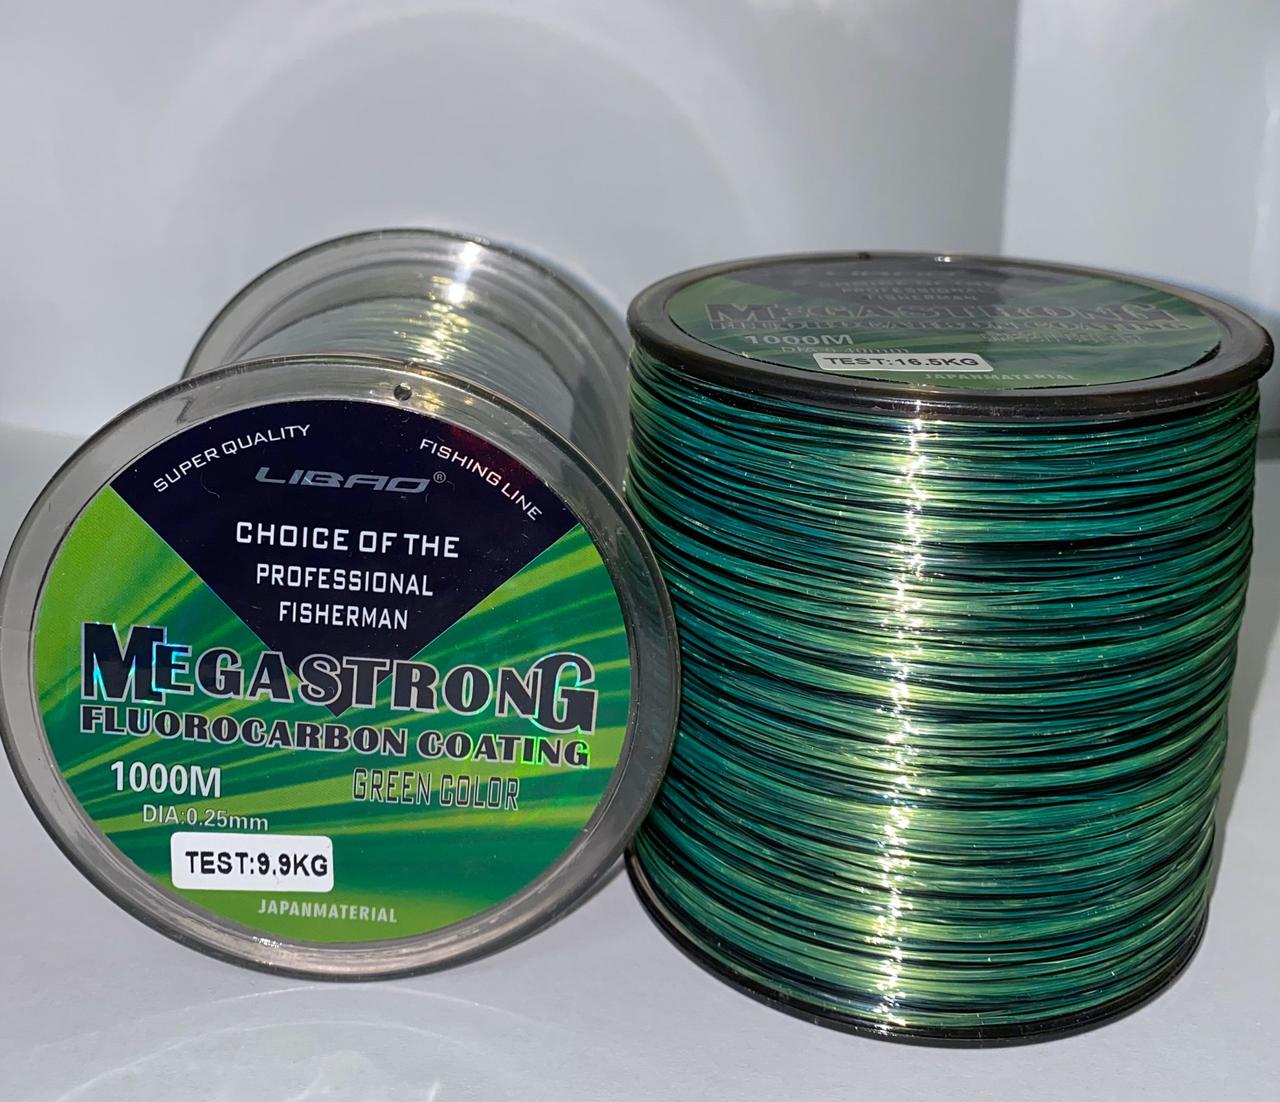 Волосінь MEGASTRONG fluorocarbon coating 1000 м 0.25 mm 5.77 kg  (ID#1105781124), ціна: 220.50 ₴, купити на